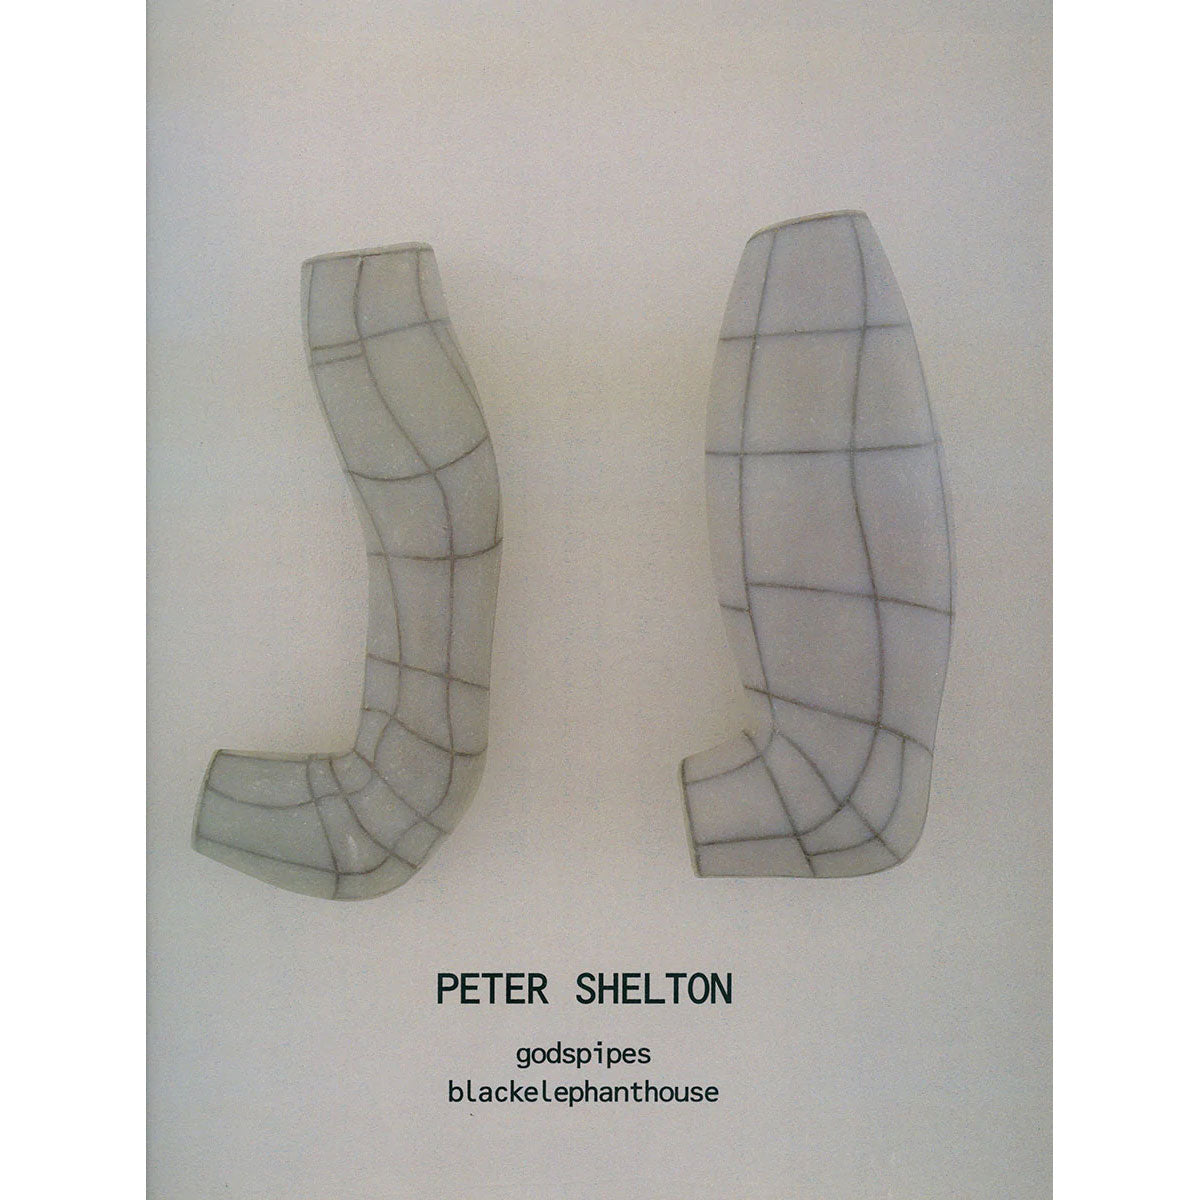 Peter Shelton: godspipes | blackelephanthouse